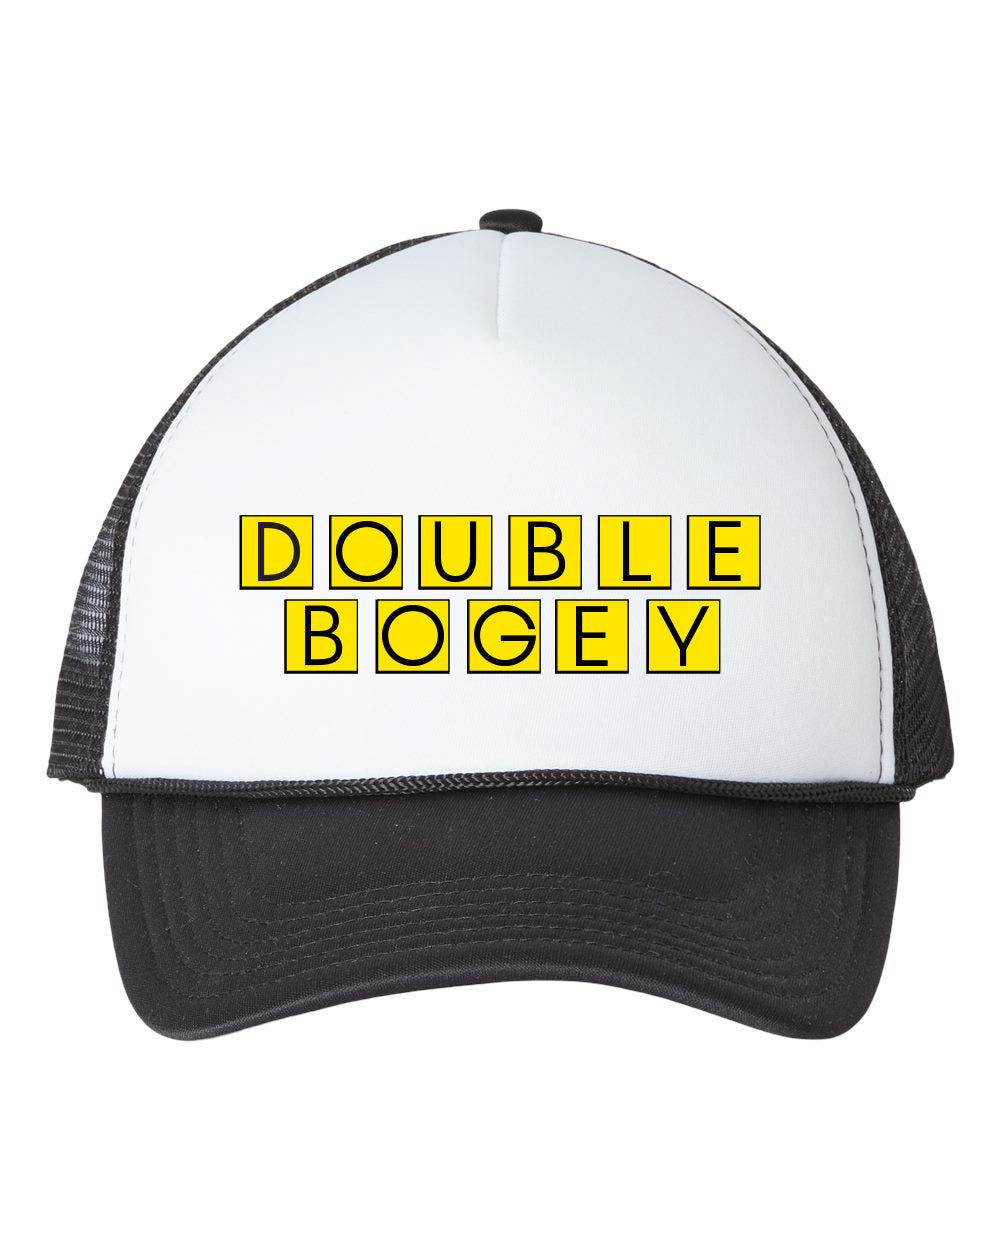 Double Bogey Foam Trucker